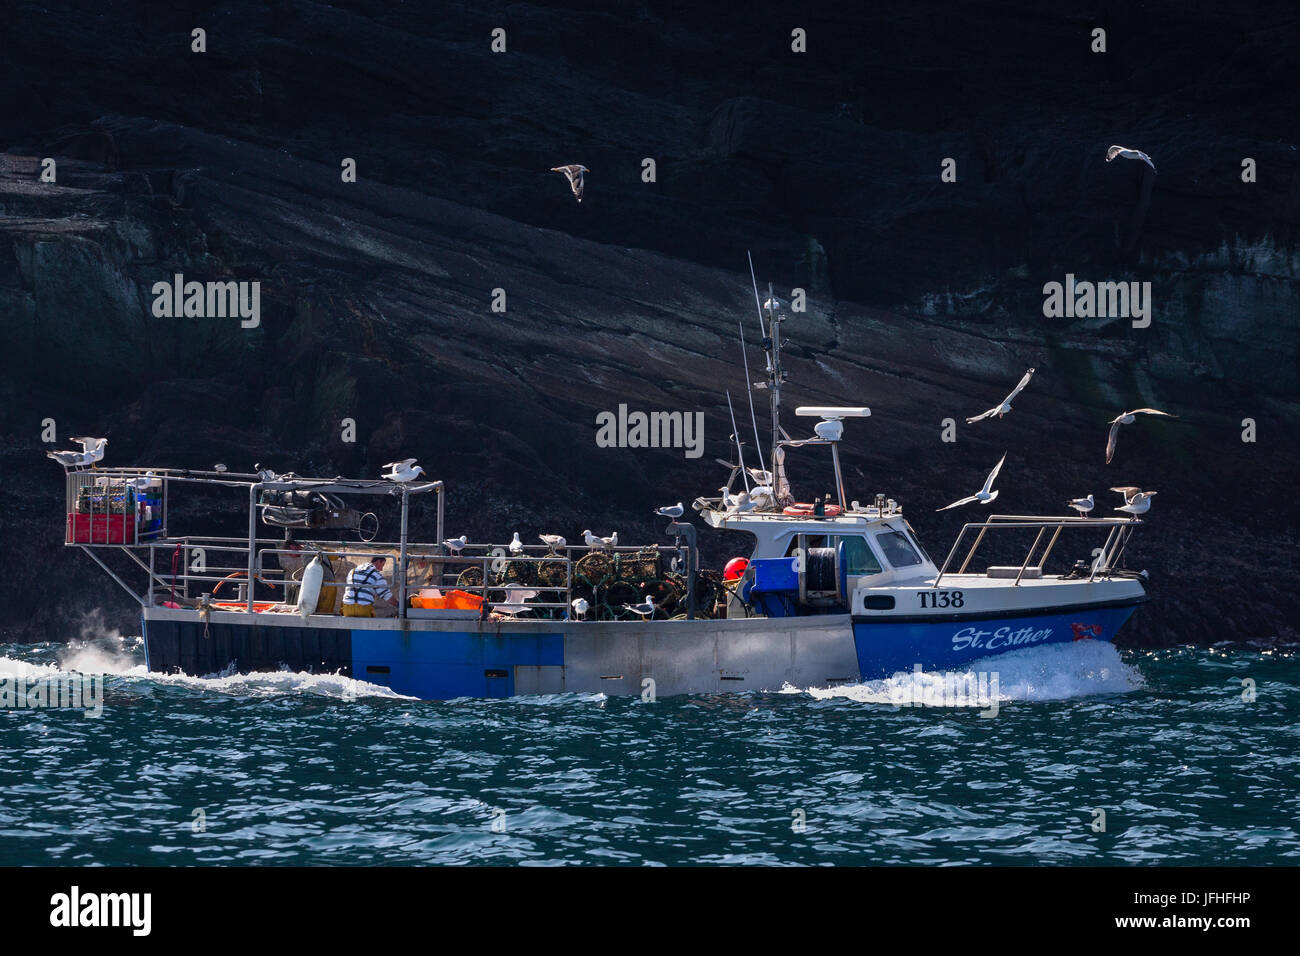 Bateau de pêche au large de la côte ouest de l'Irlande, près de l'île de Valentia, façon sauvage de l'Atlantique Banque D'Images